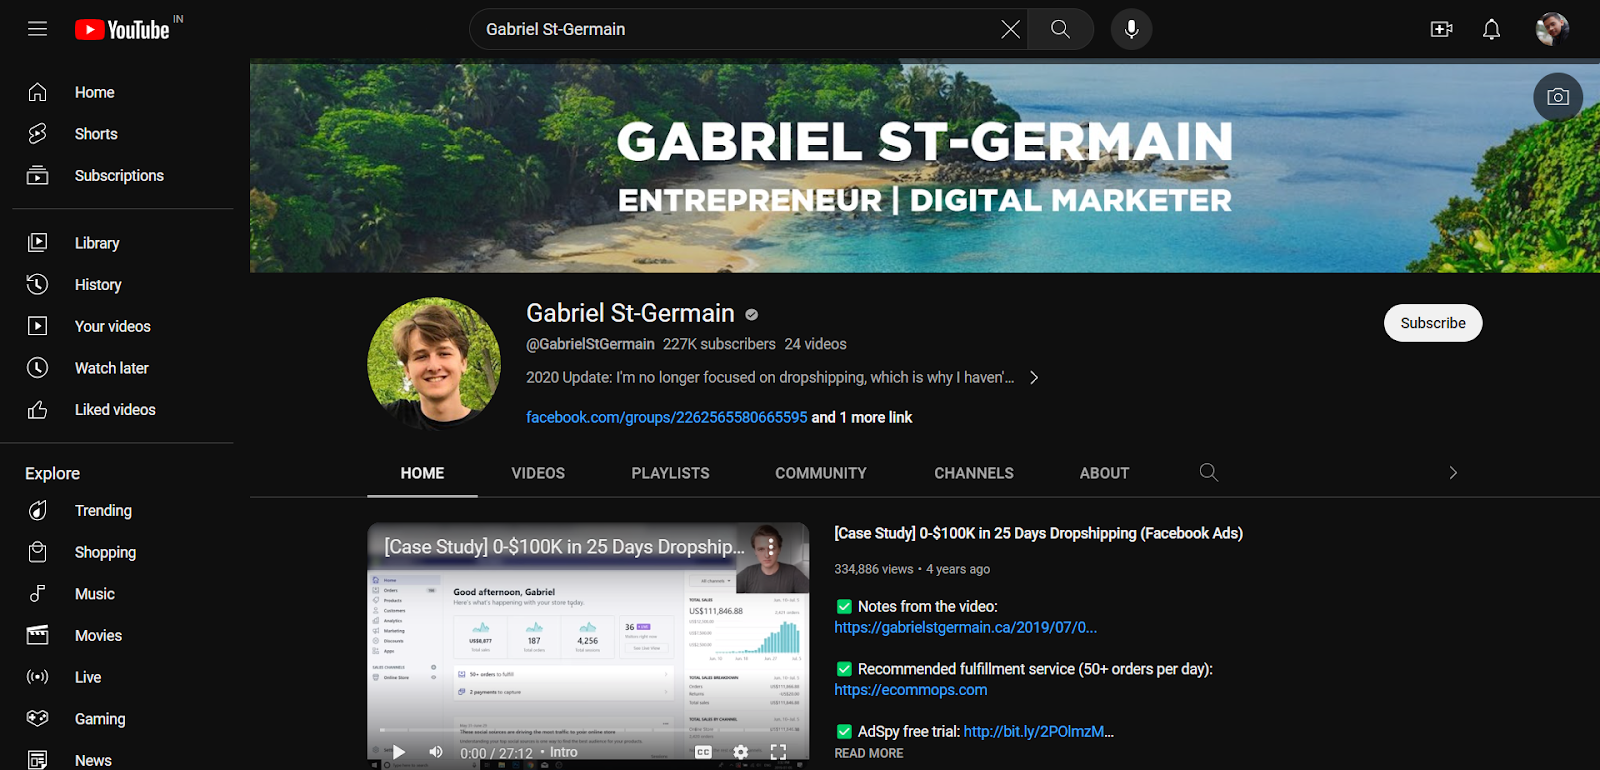 Gabriel St-Germain's YouTube channel